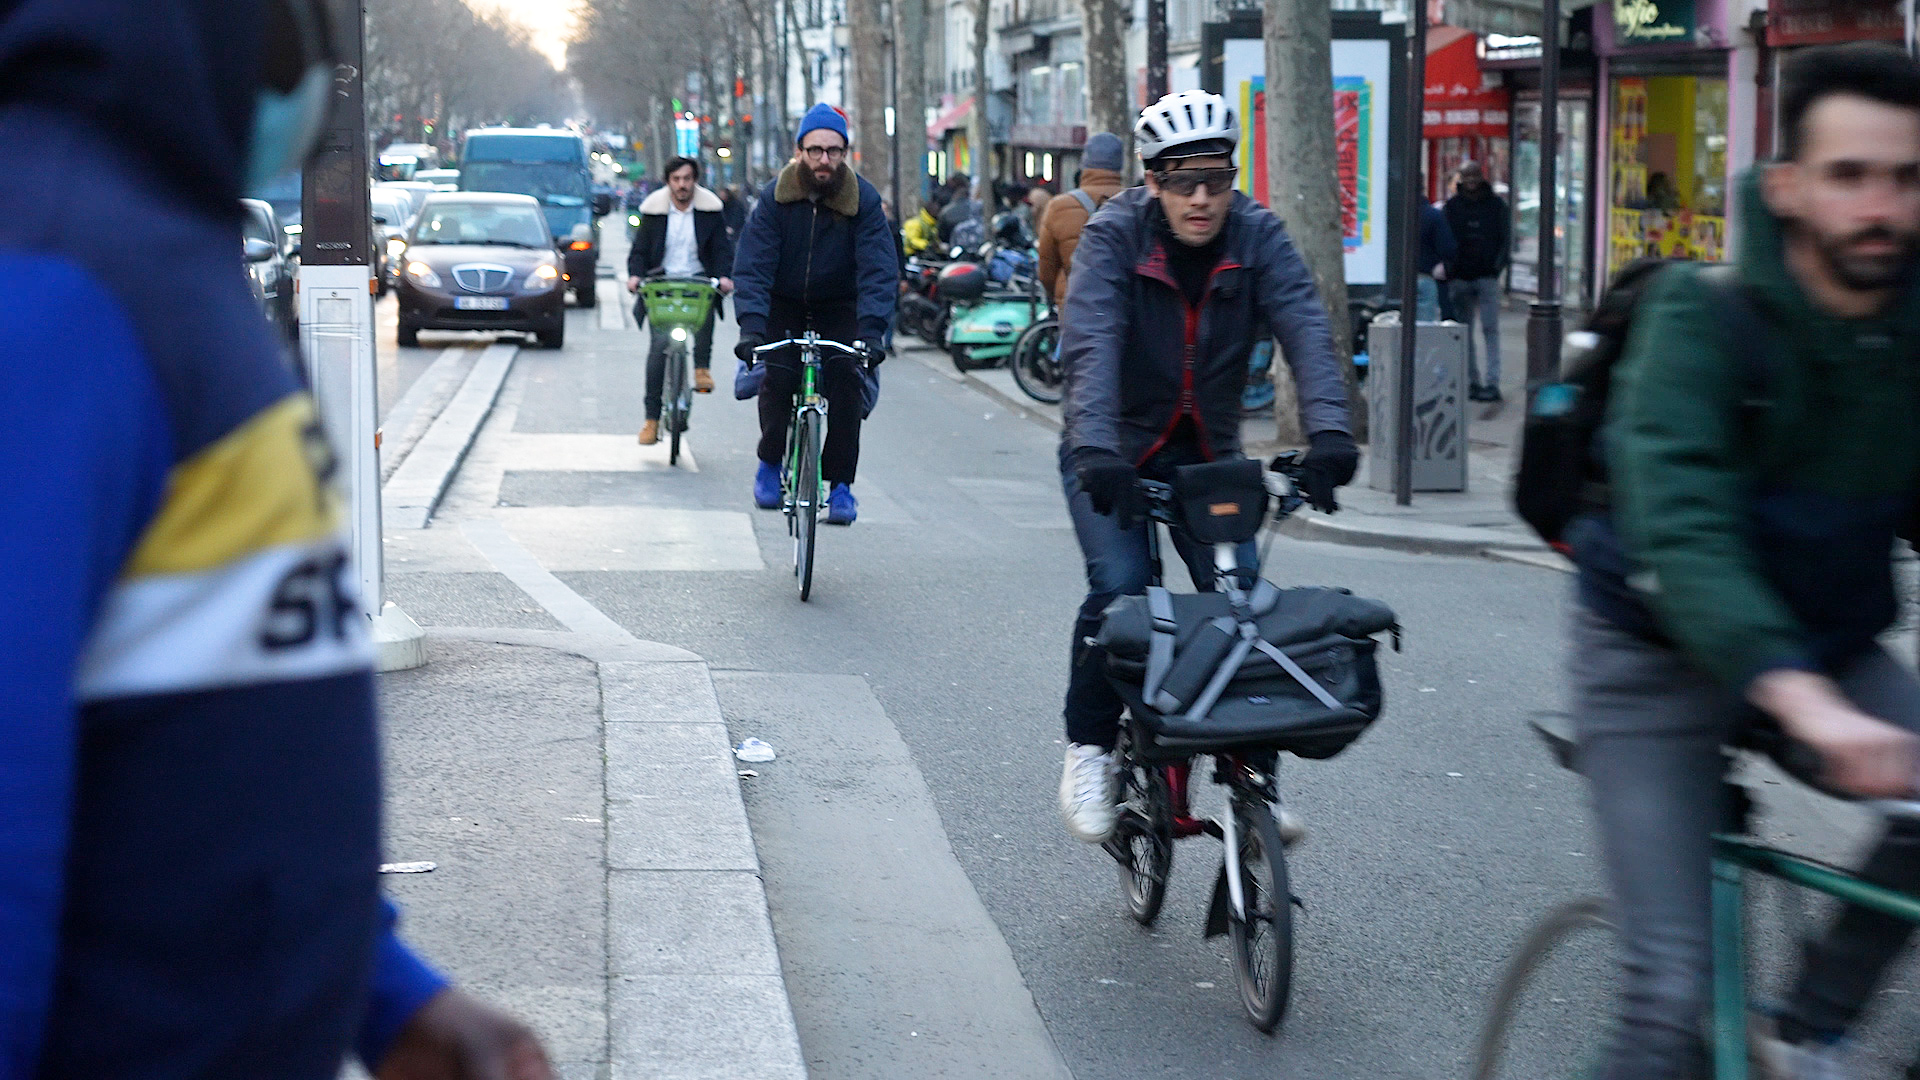 Le baromètre de la FUB, une association majeure de cyclistes, publie son baromètre des villes cyclables. Cette vaste enquête citoyenne pointe, entre autres, un manque de politiques cyclables ambitieuses de la municipalité parisienne depuis deux ans, selon les associations.